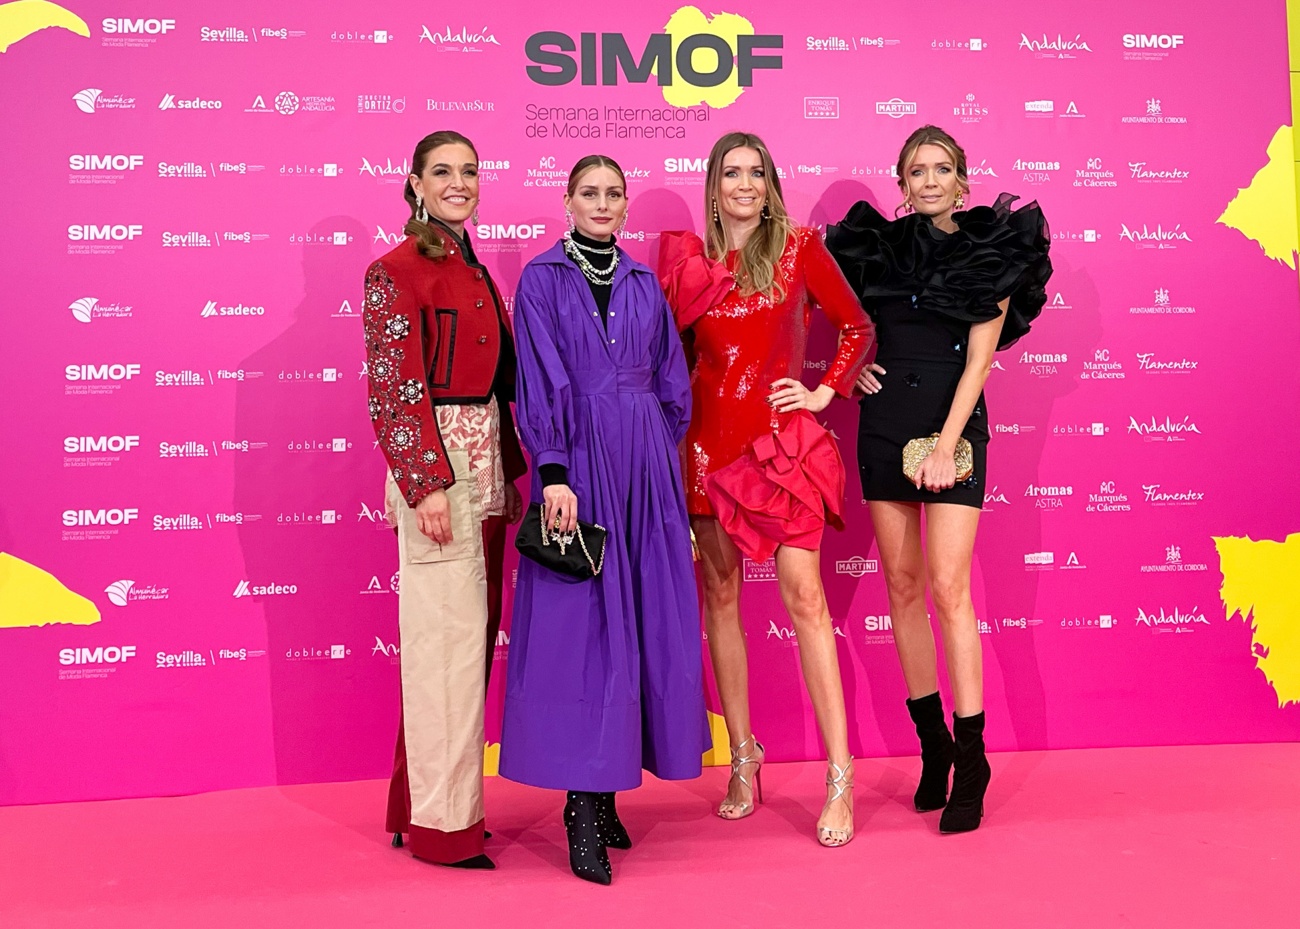 Olivia Palermo, spettacolare in un cappotto ‘made in Spain’, si abbandona alla moda del flamenco durante la sua visita a Siviglia